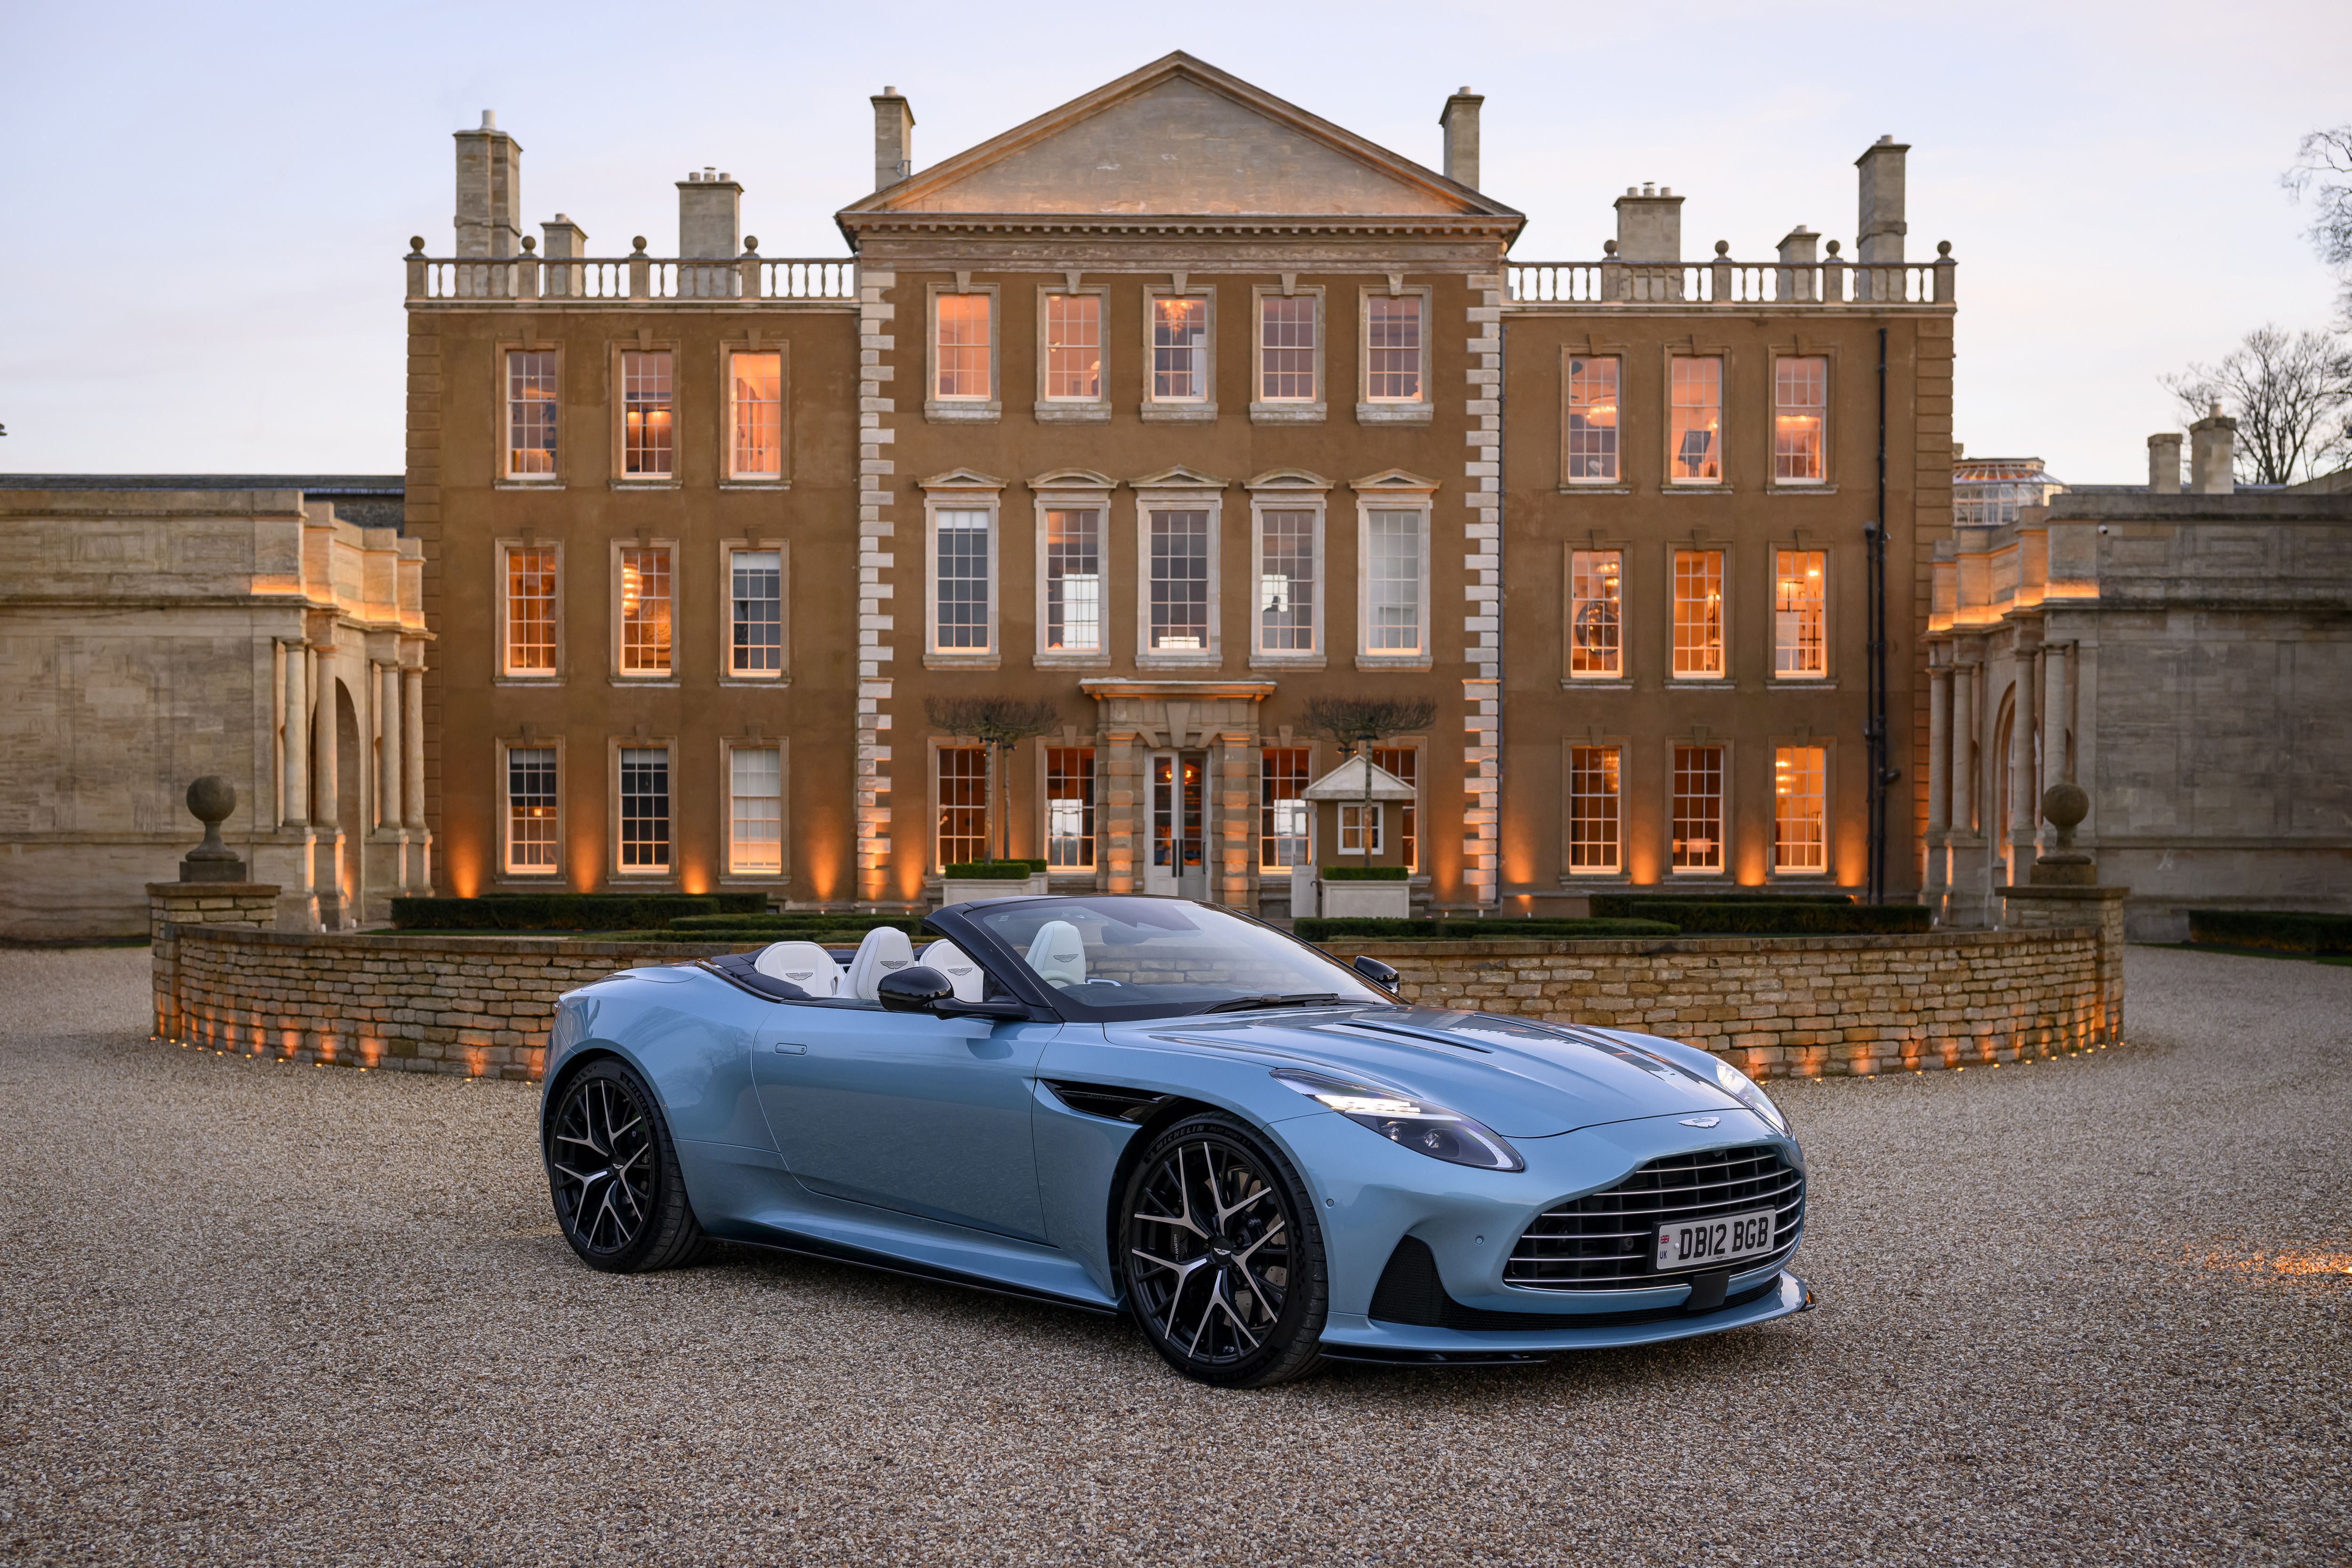 Aston Martin Wins King’s Award for Enterprise in Innovation